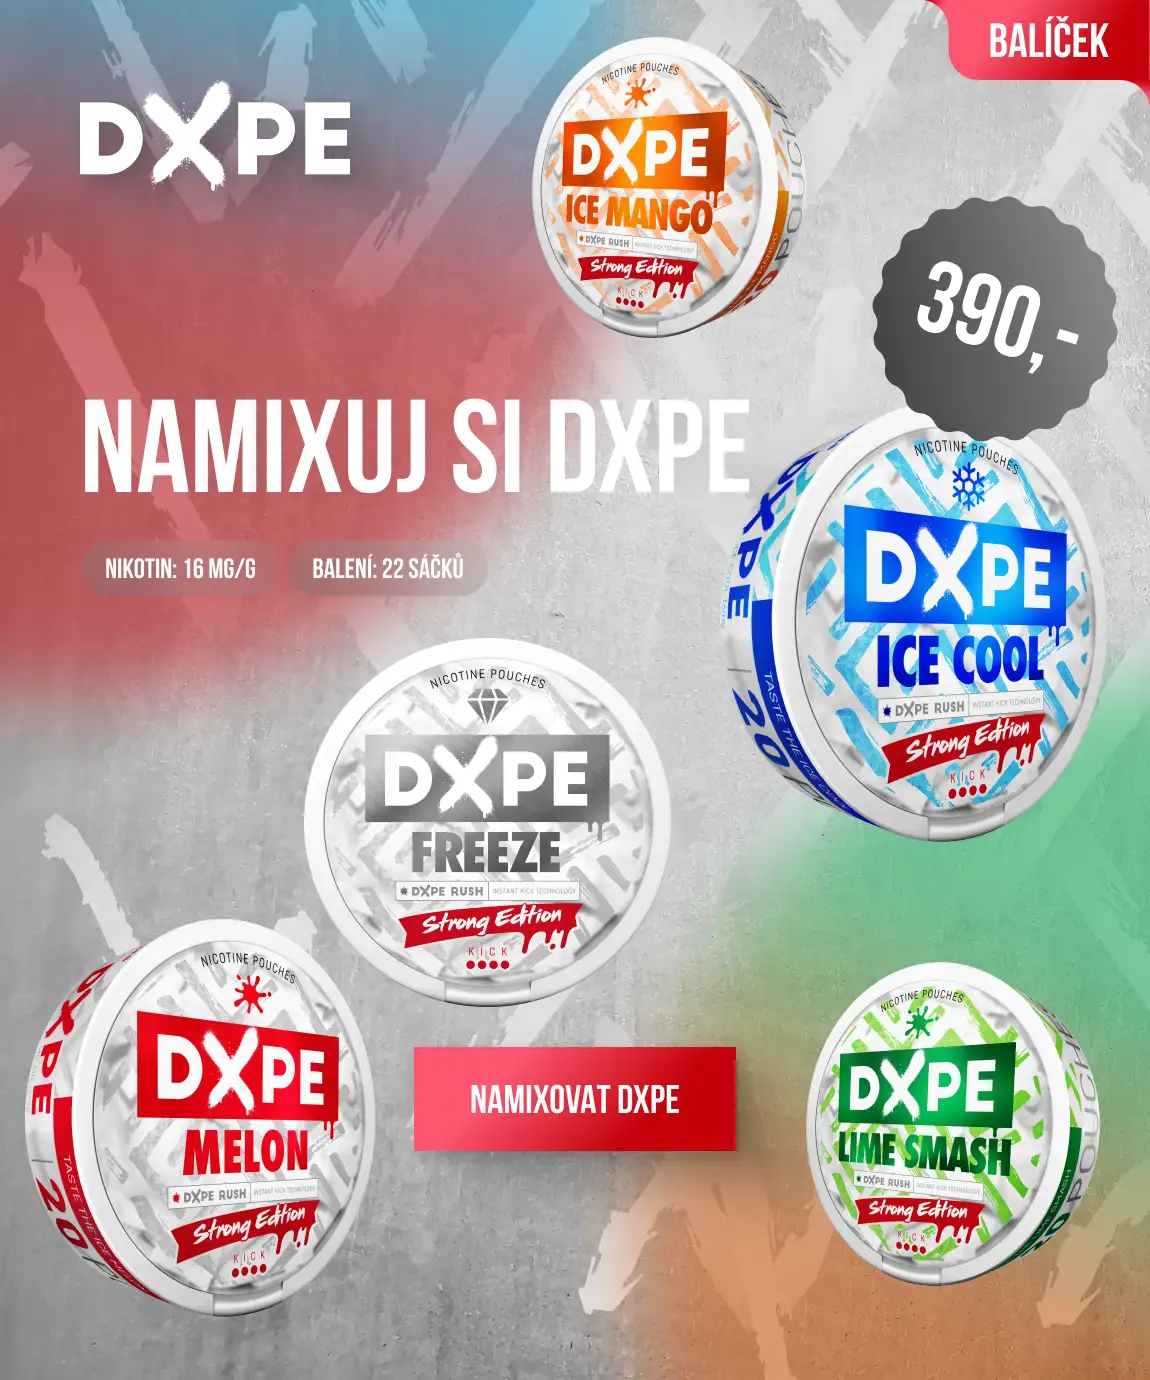 Namixuj si balíček DXPE podle své chuti